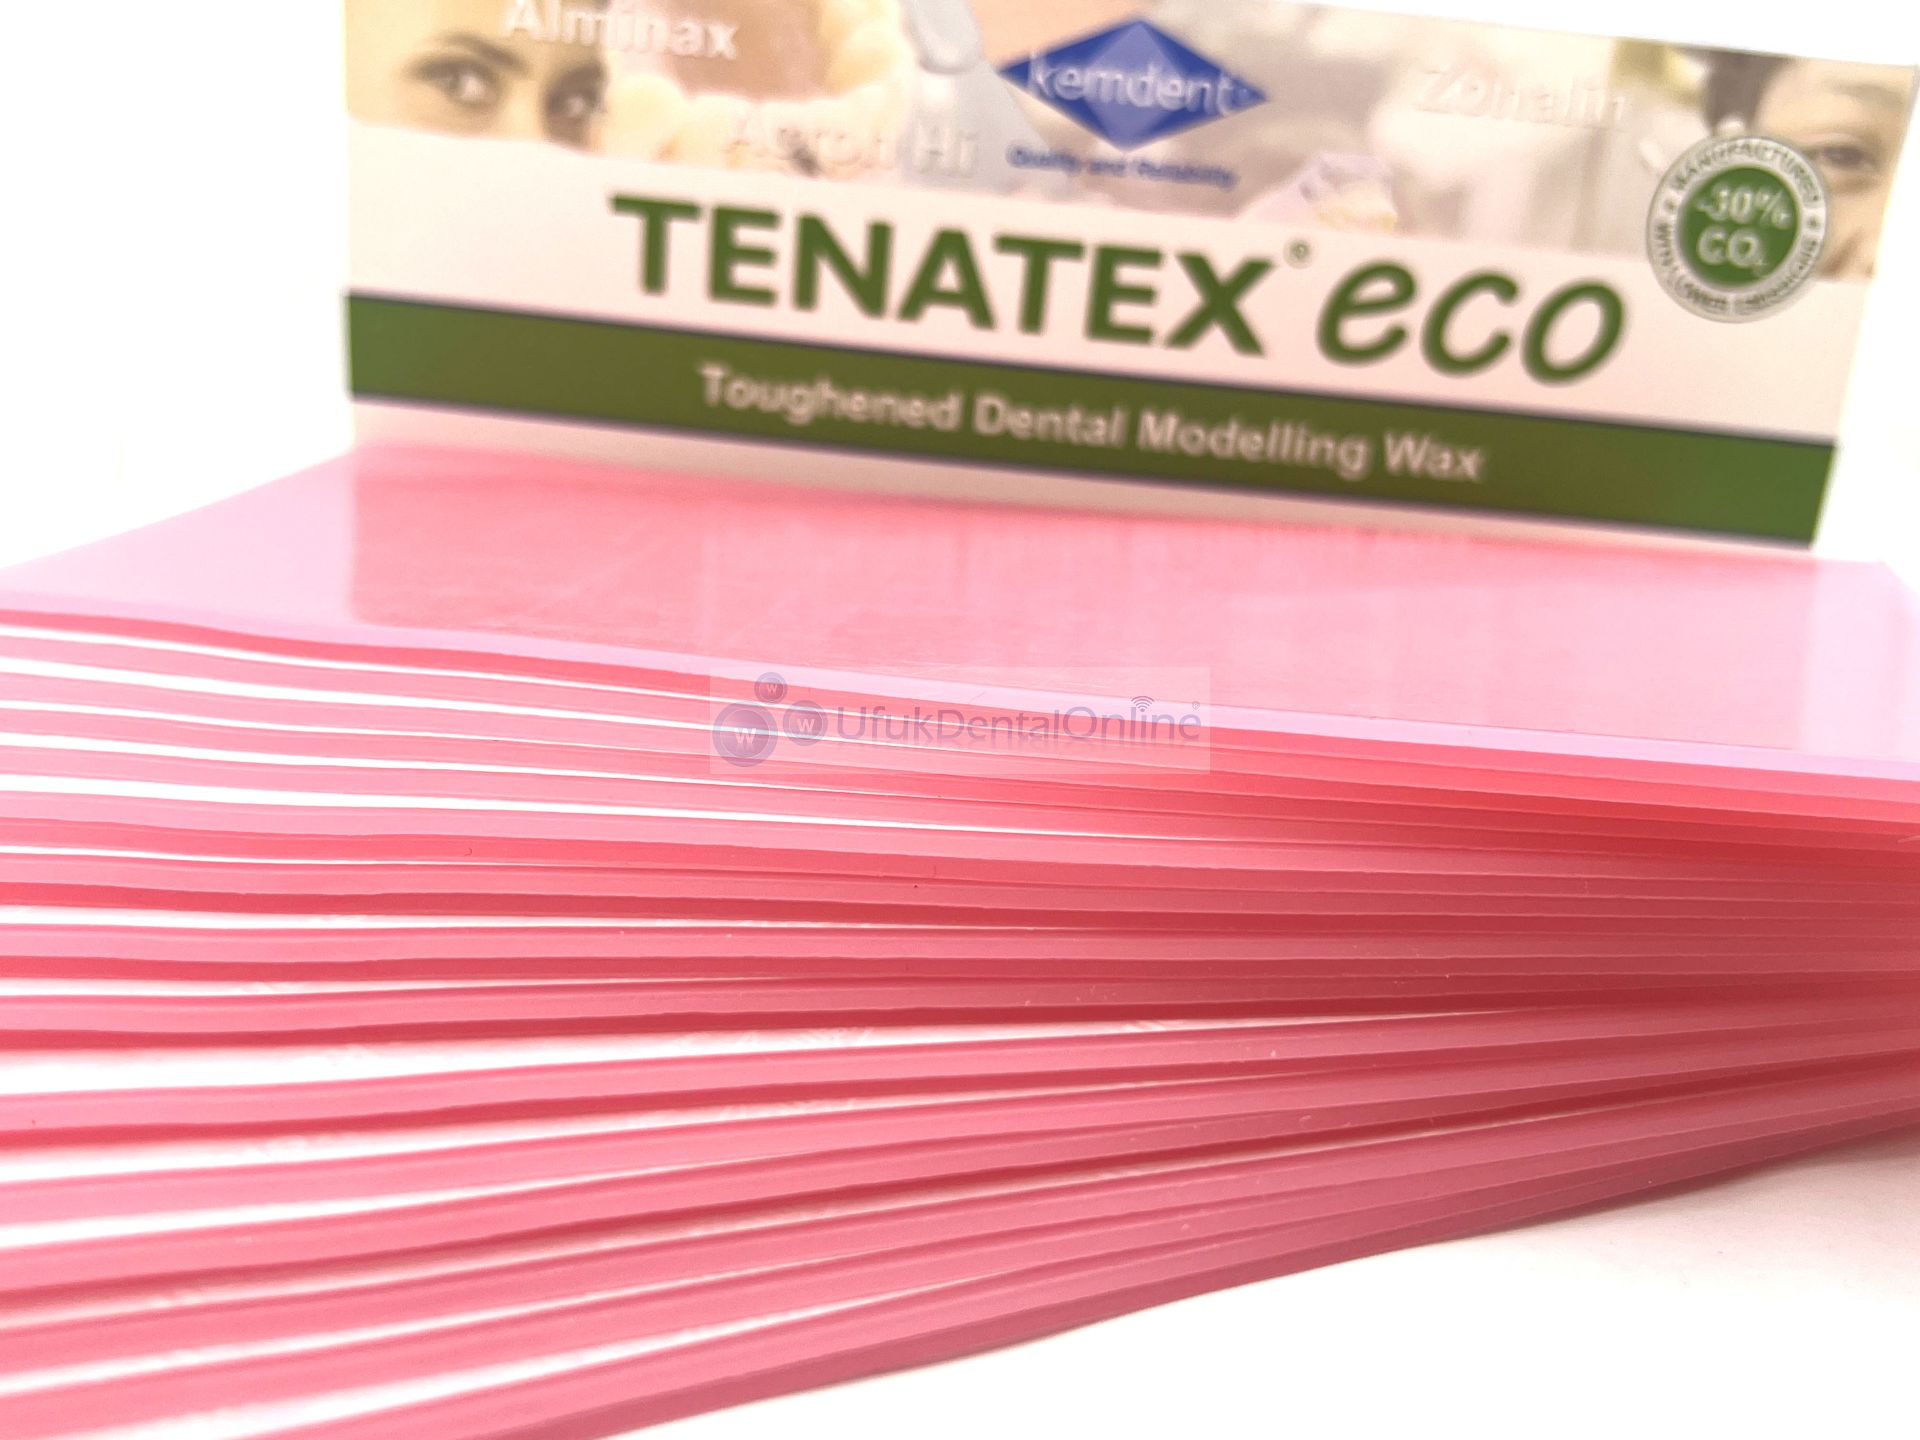 Kemdent Tenatex Eco Pembe Plak Mum